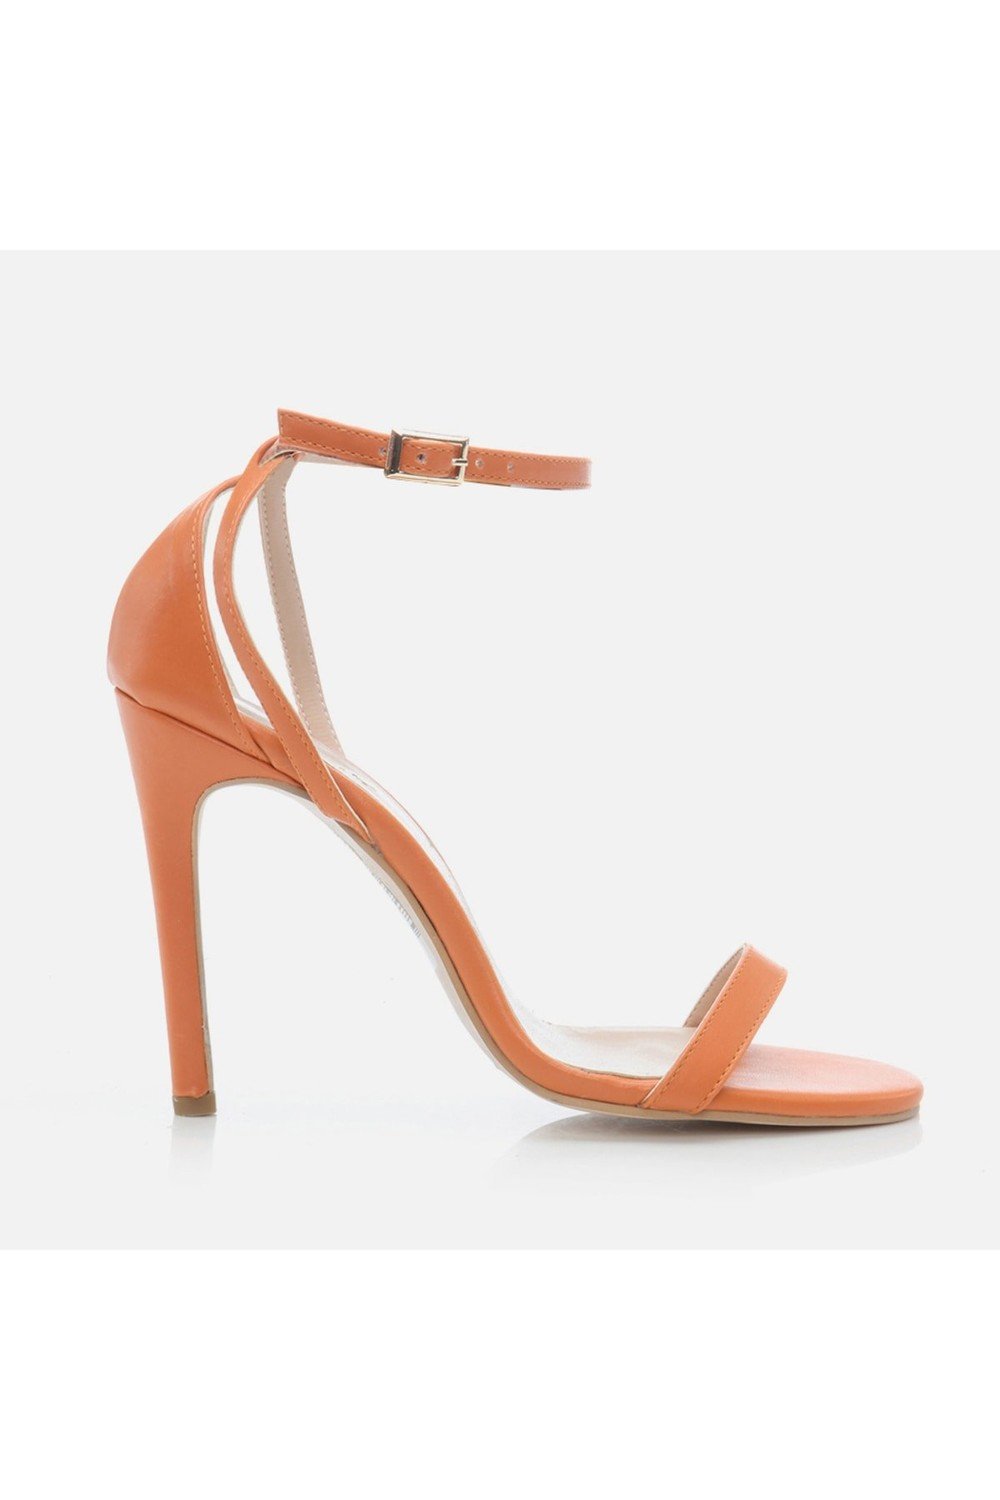 Hotiç Sandals - Orange - Stiletto Heels